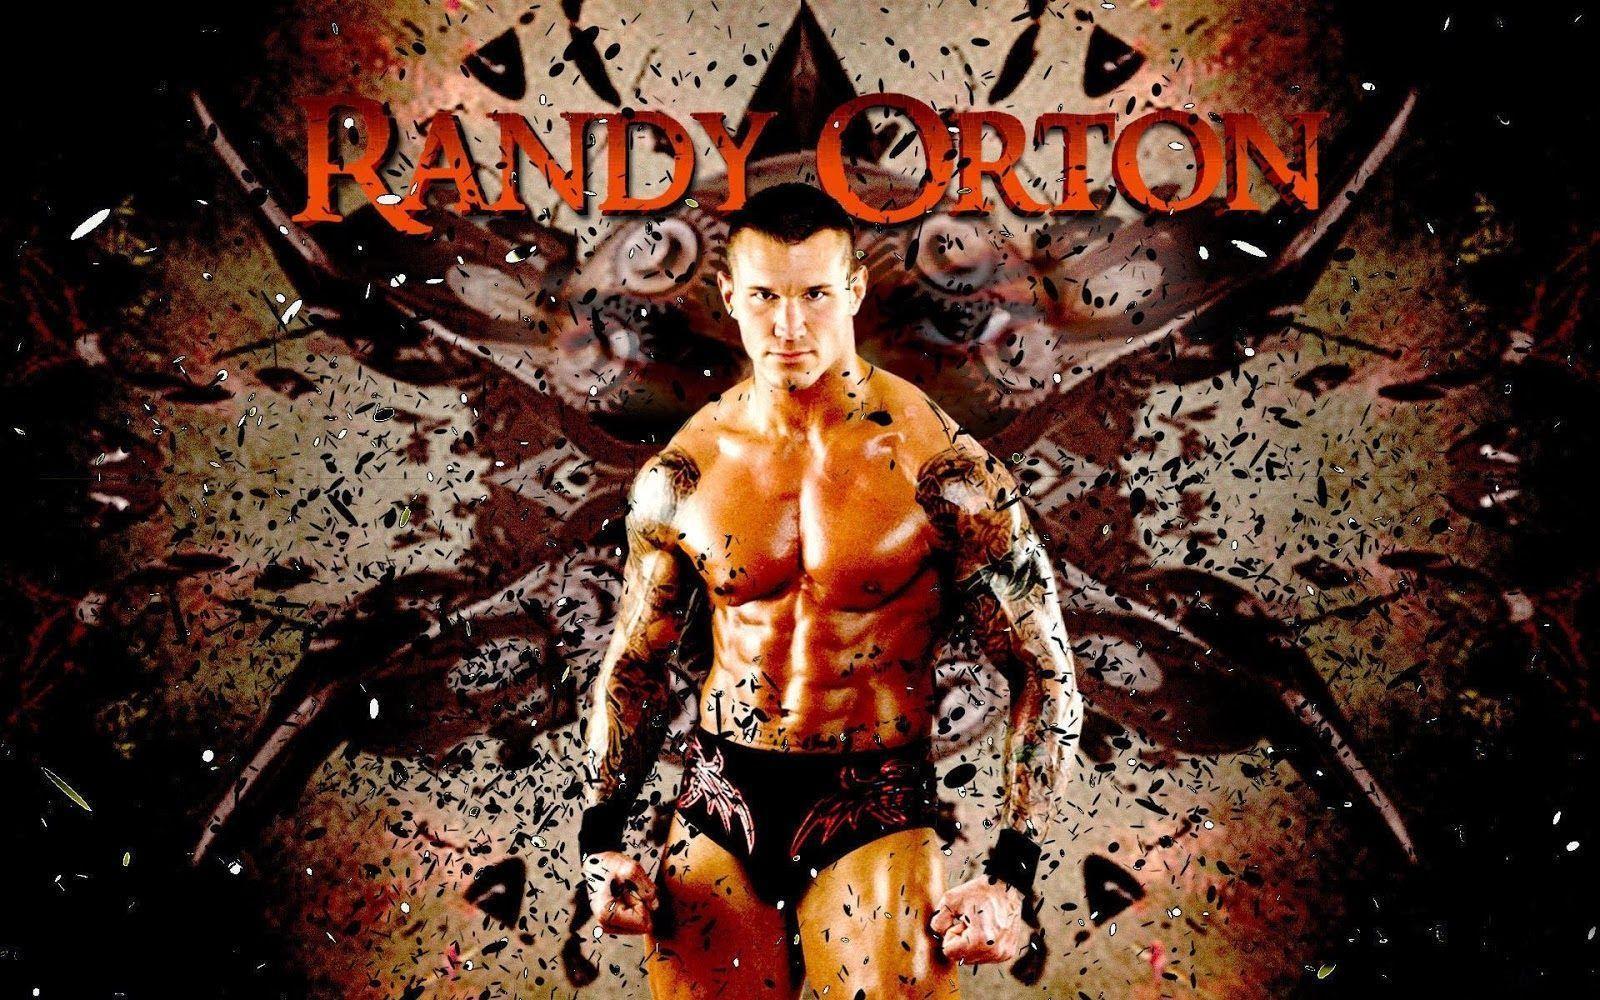 Randy Orton Wallpaper 2015